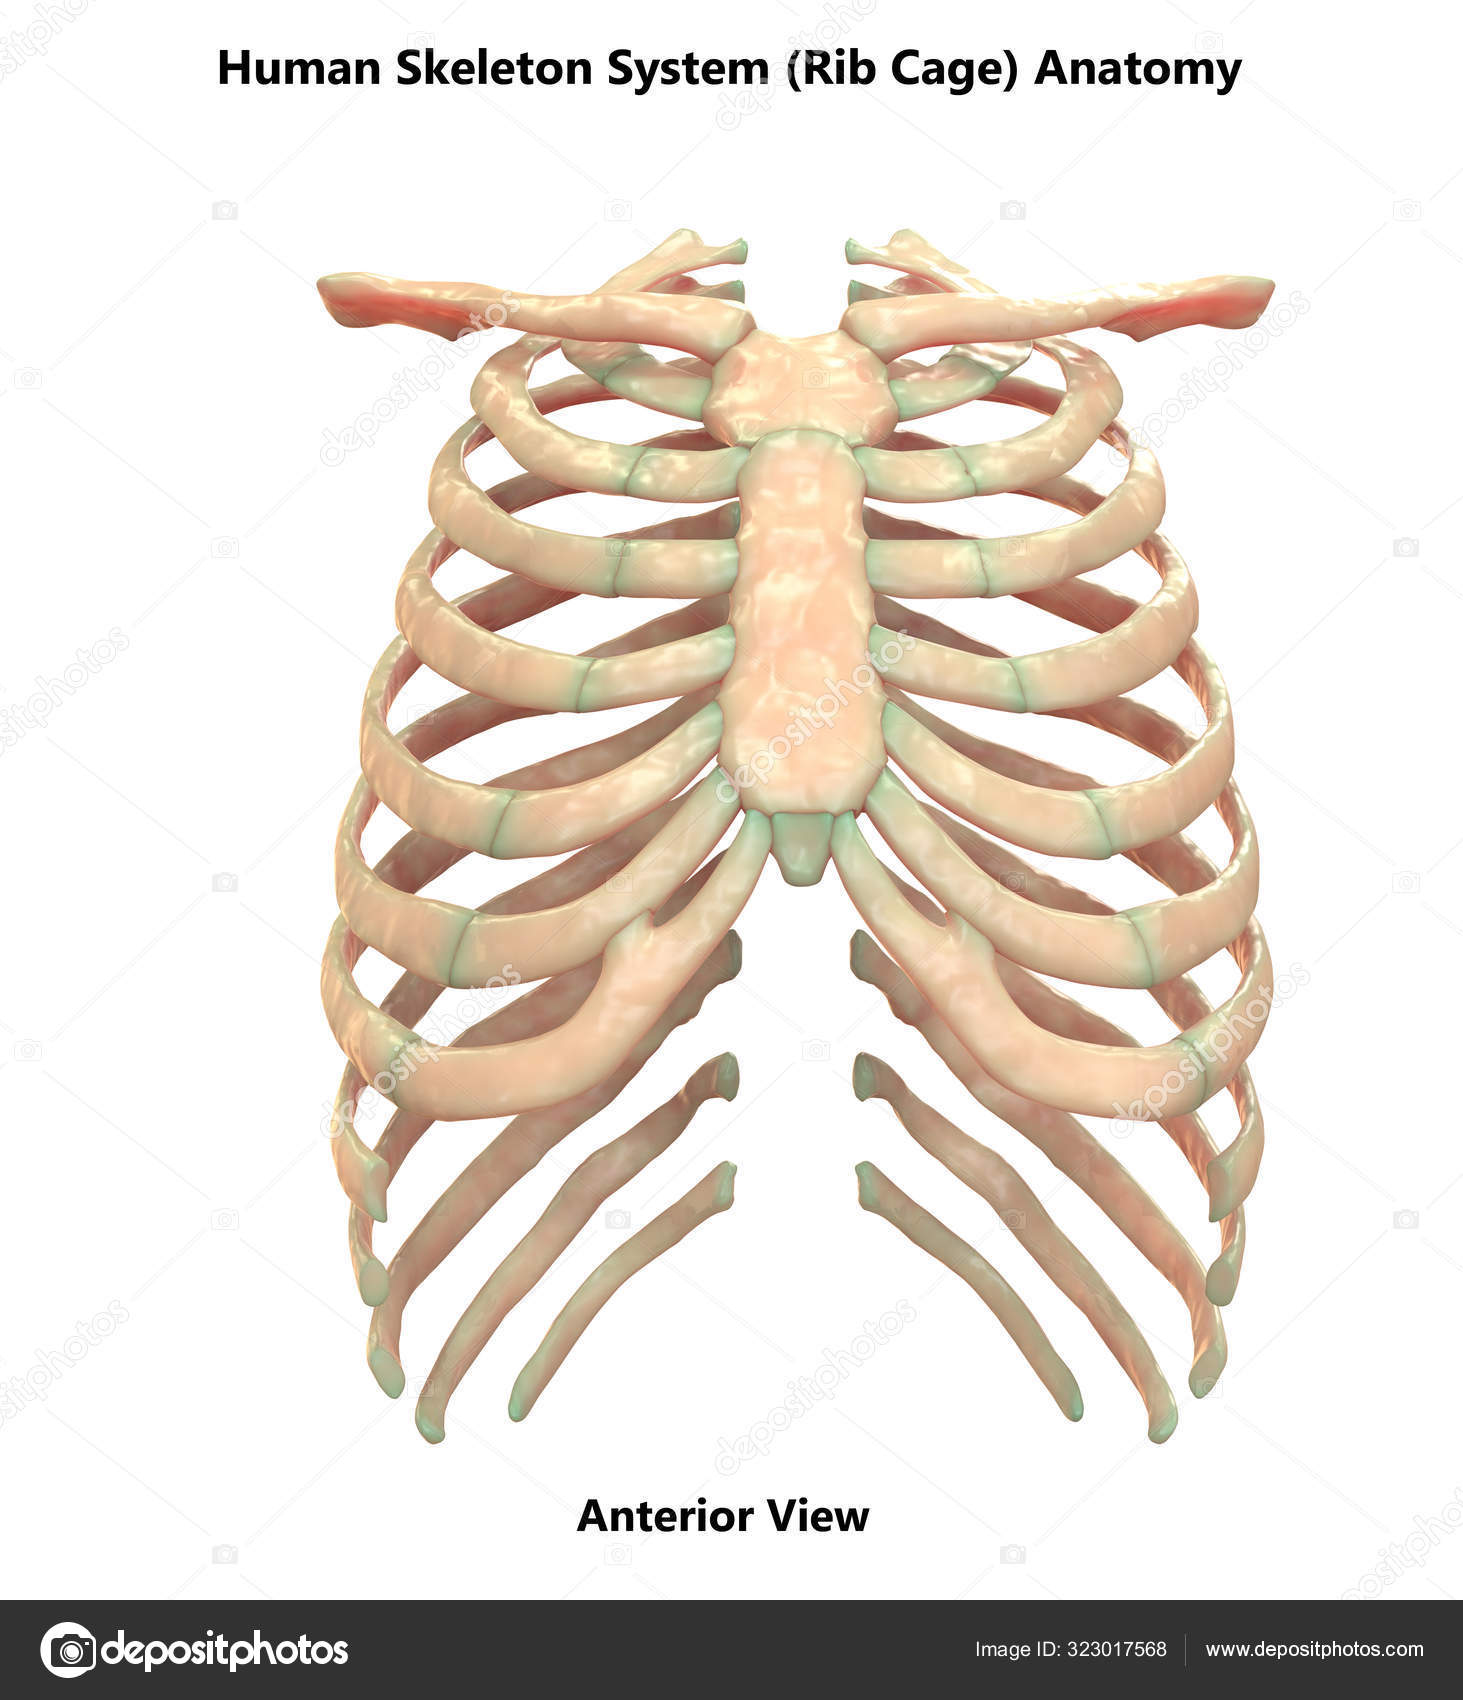 Human Skeleton System Axial Skeleton Anatomy Posterior View Stock Photo ...